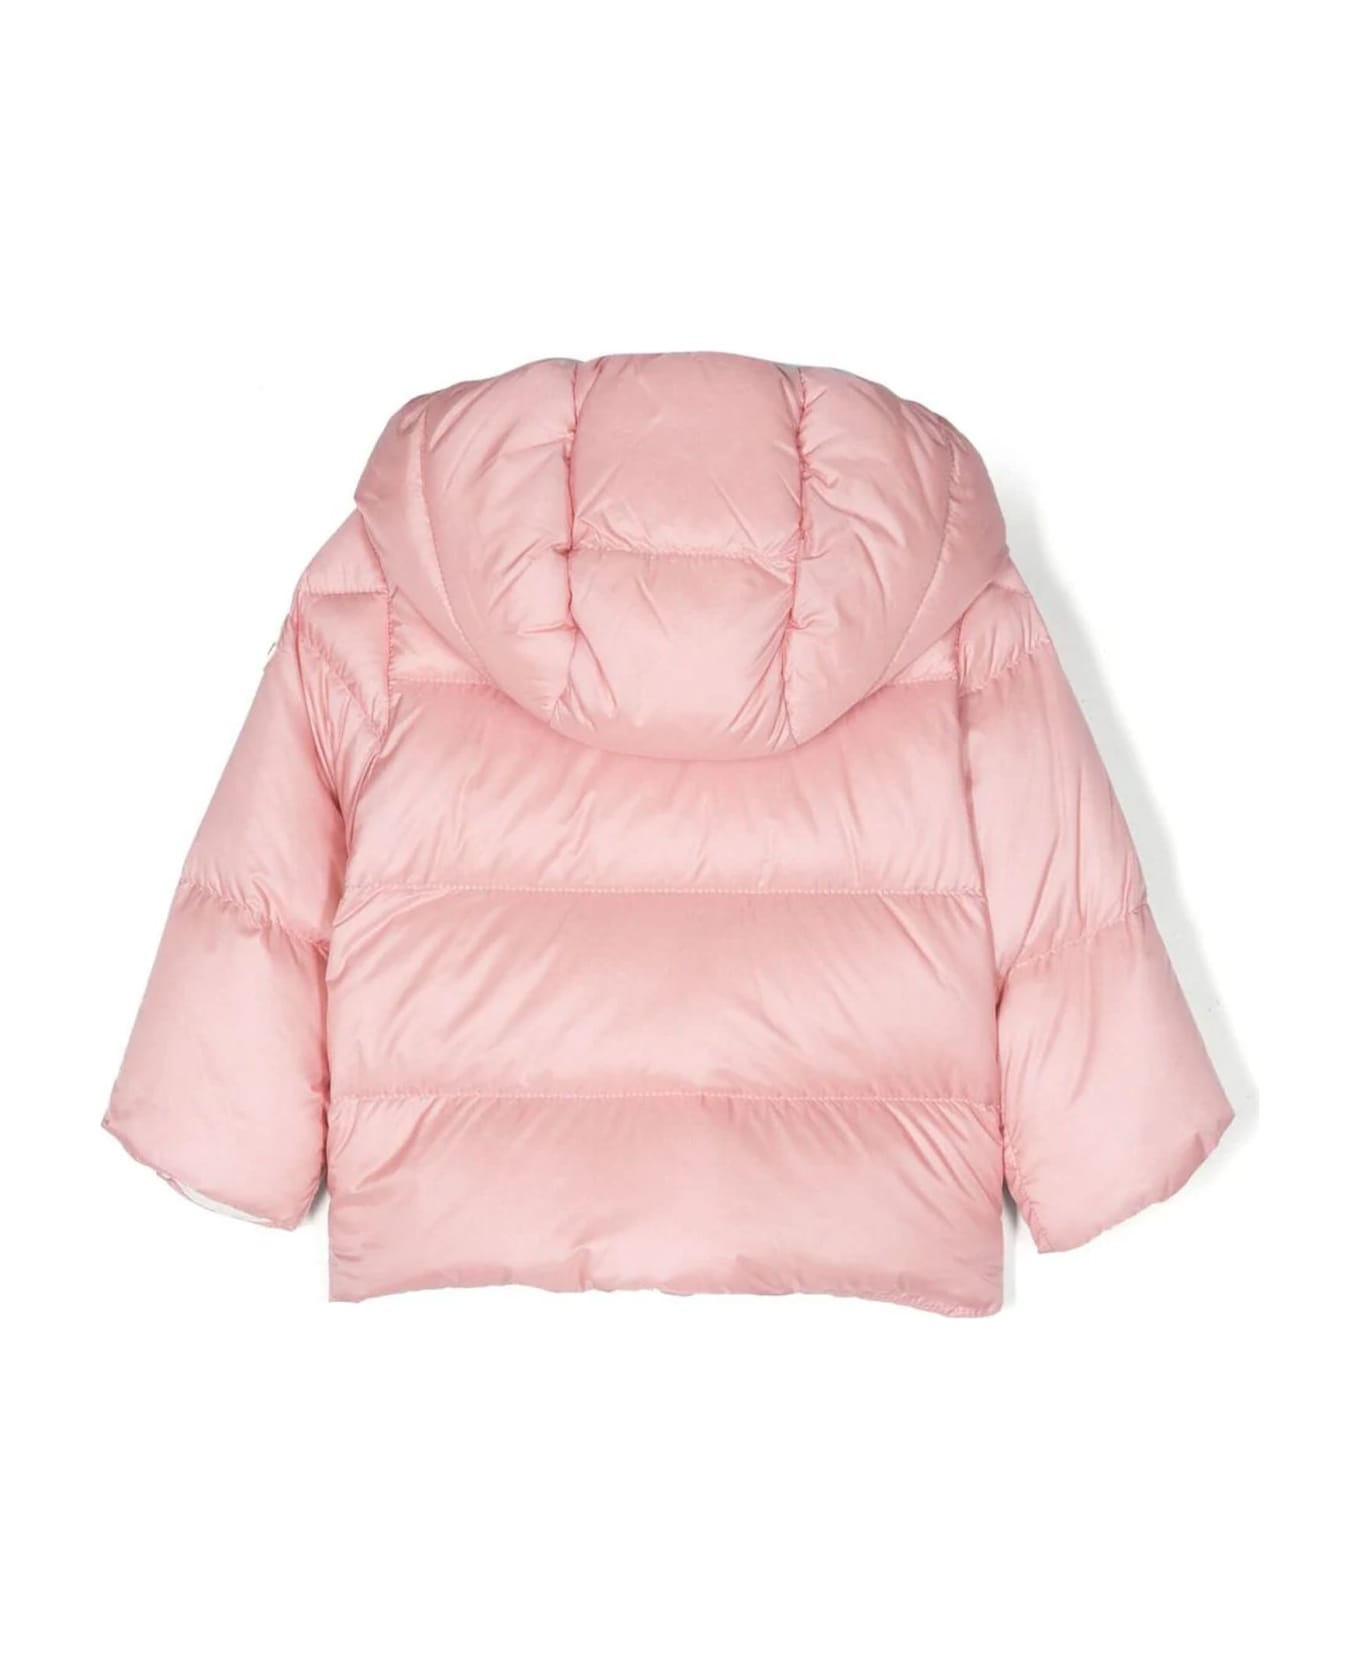 Moncler Pink Polyamide Jacket